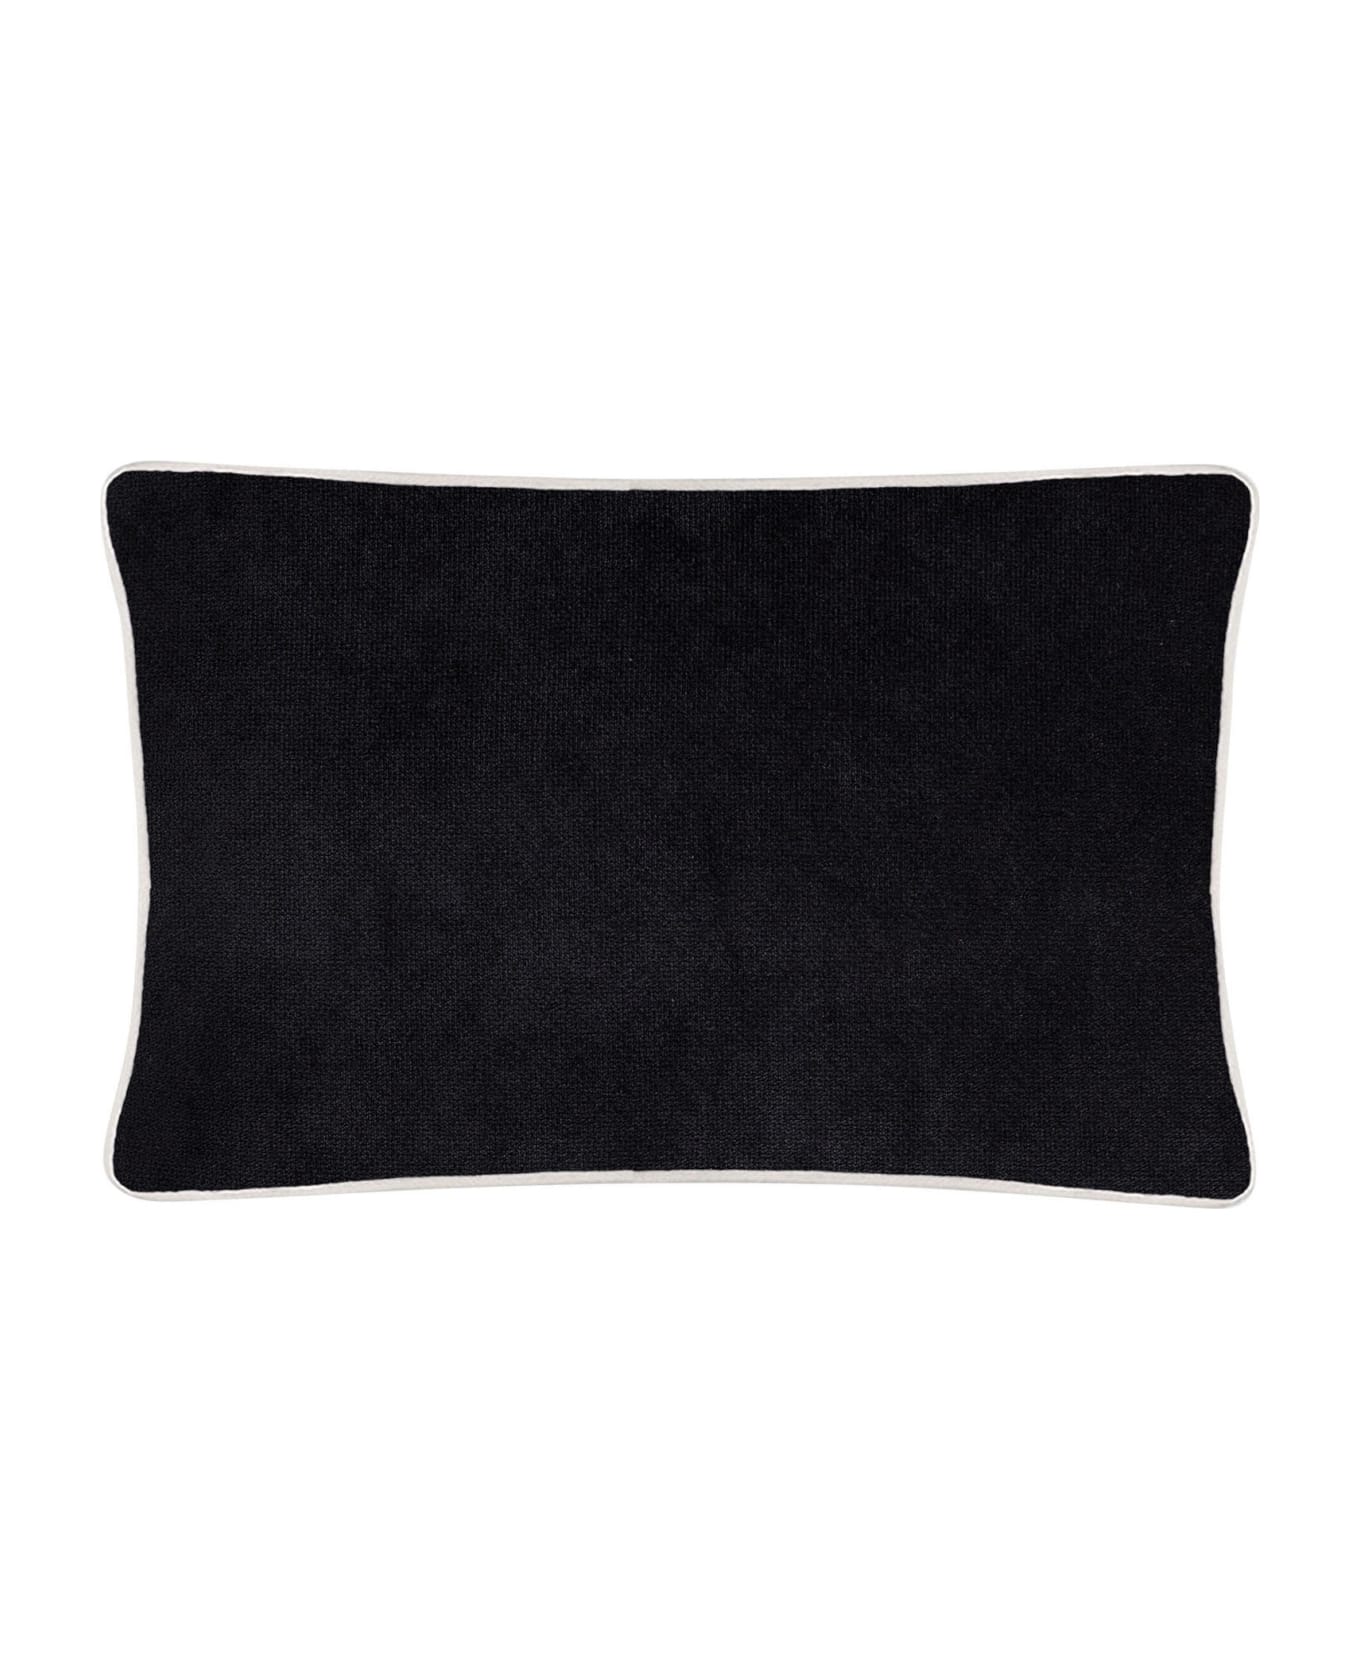 Lo Decor Happy Frame Velvet Pillow - Black/Cream